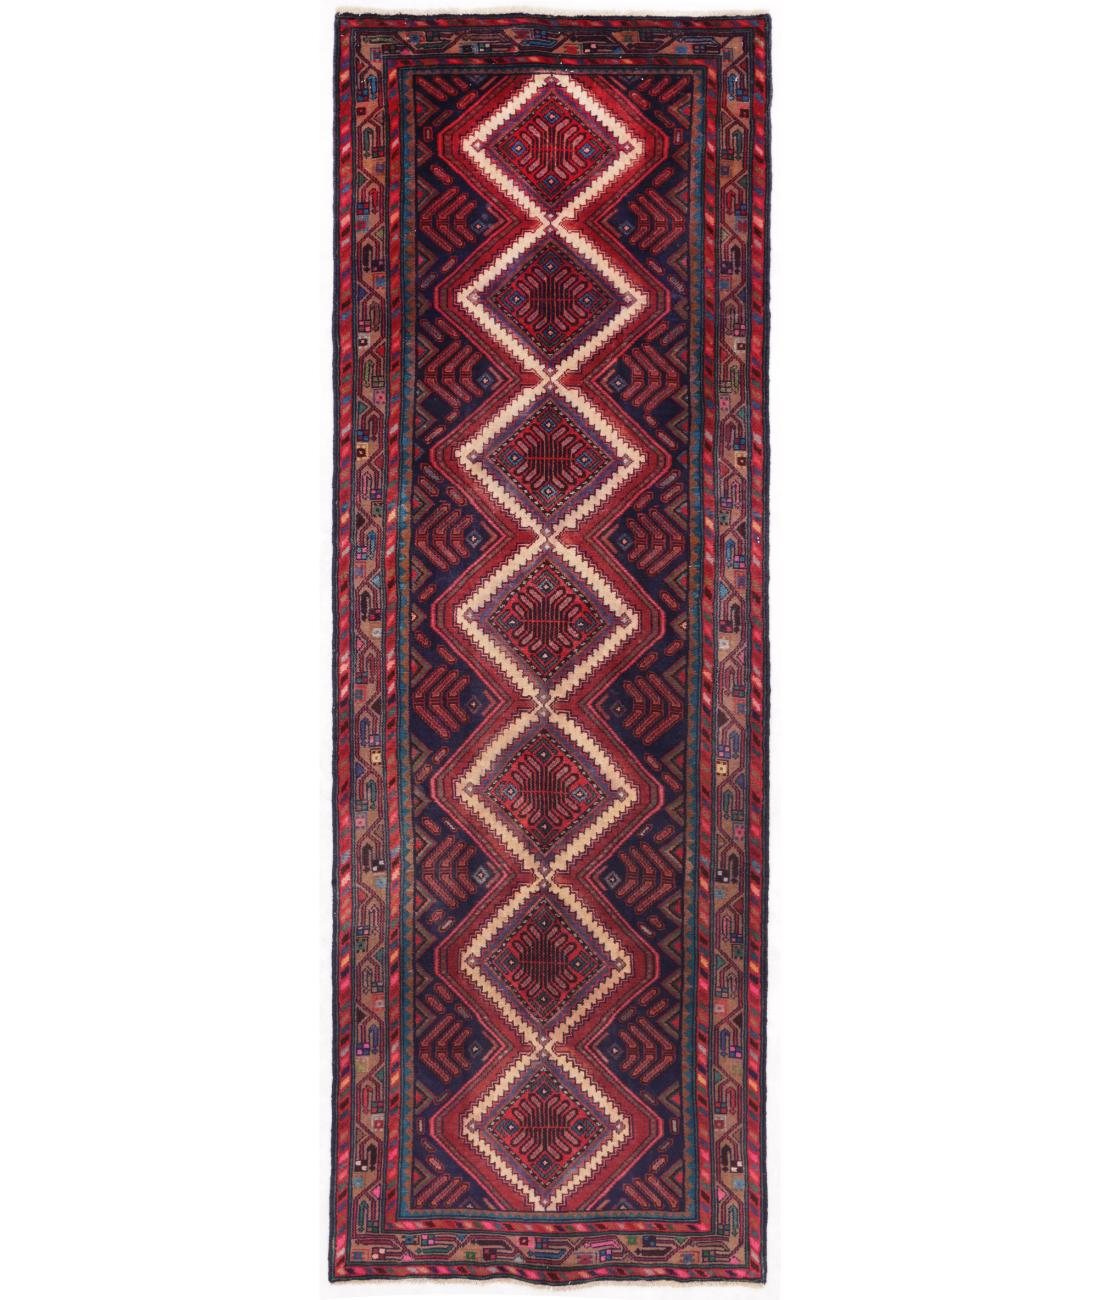 Hand Knotted Persian Bijar Wool Rug - 3'1'' x 9'5'' 3' 1" X 9' 5" ( 94 X 287 ) / Blue / Brown